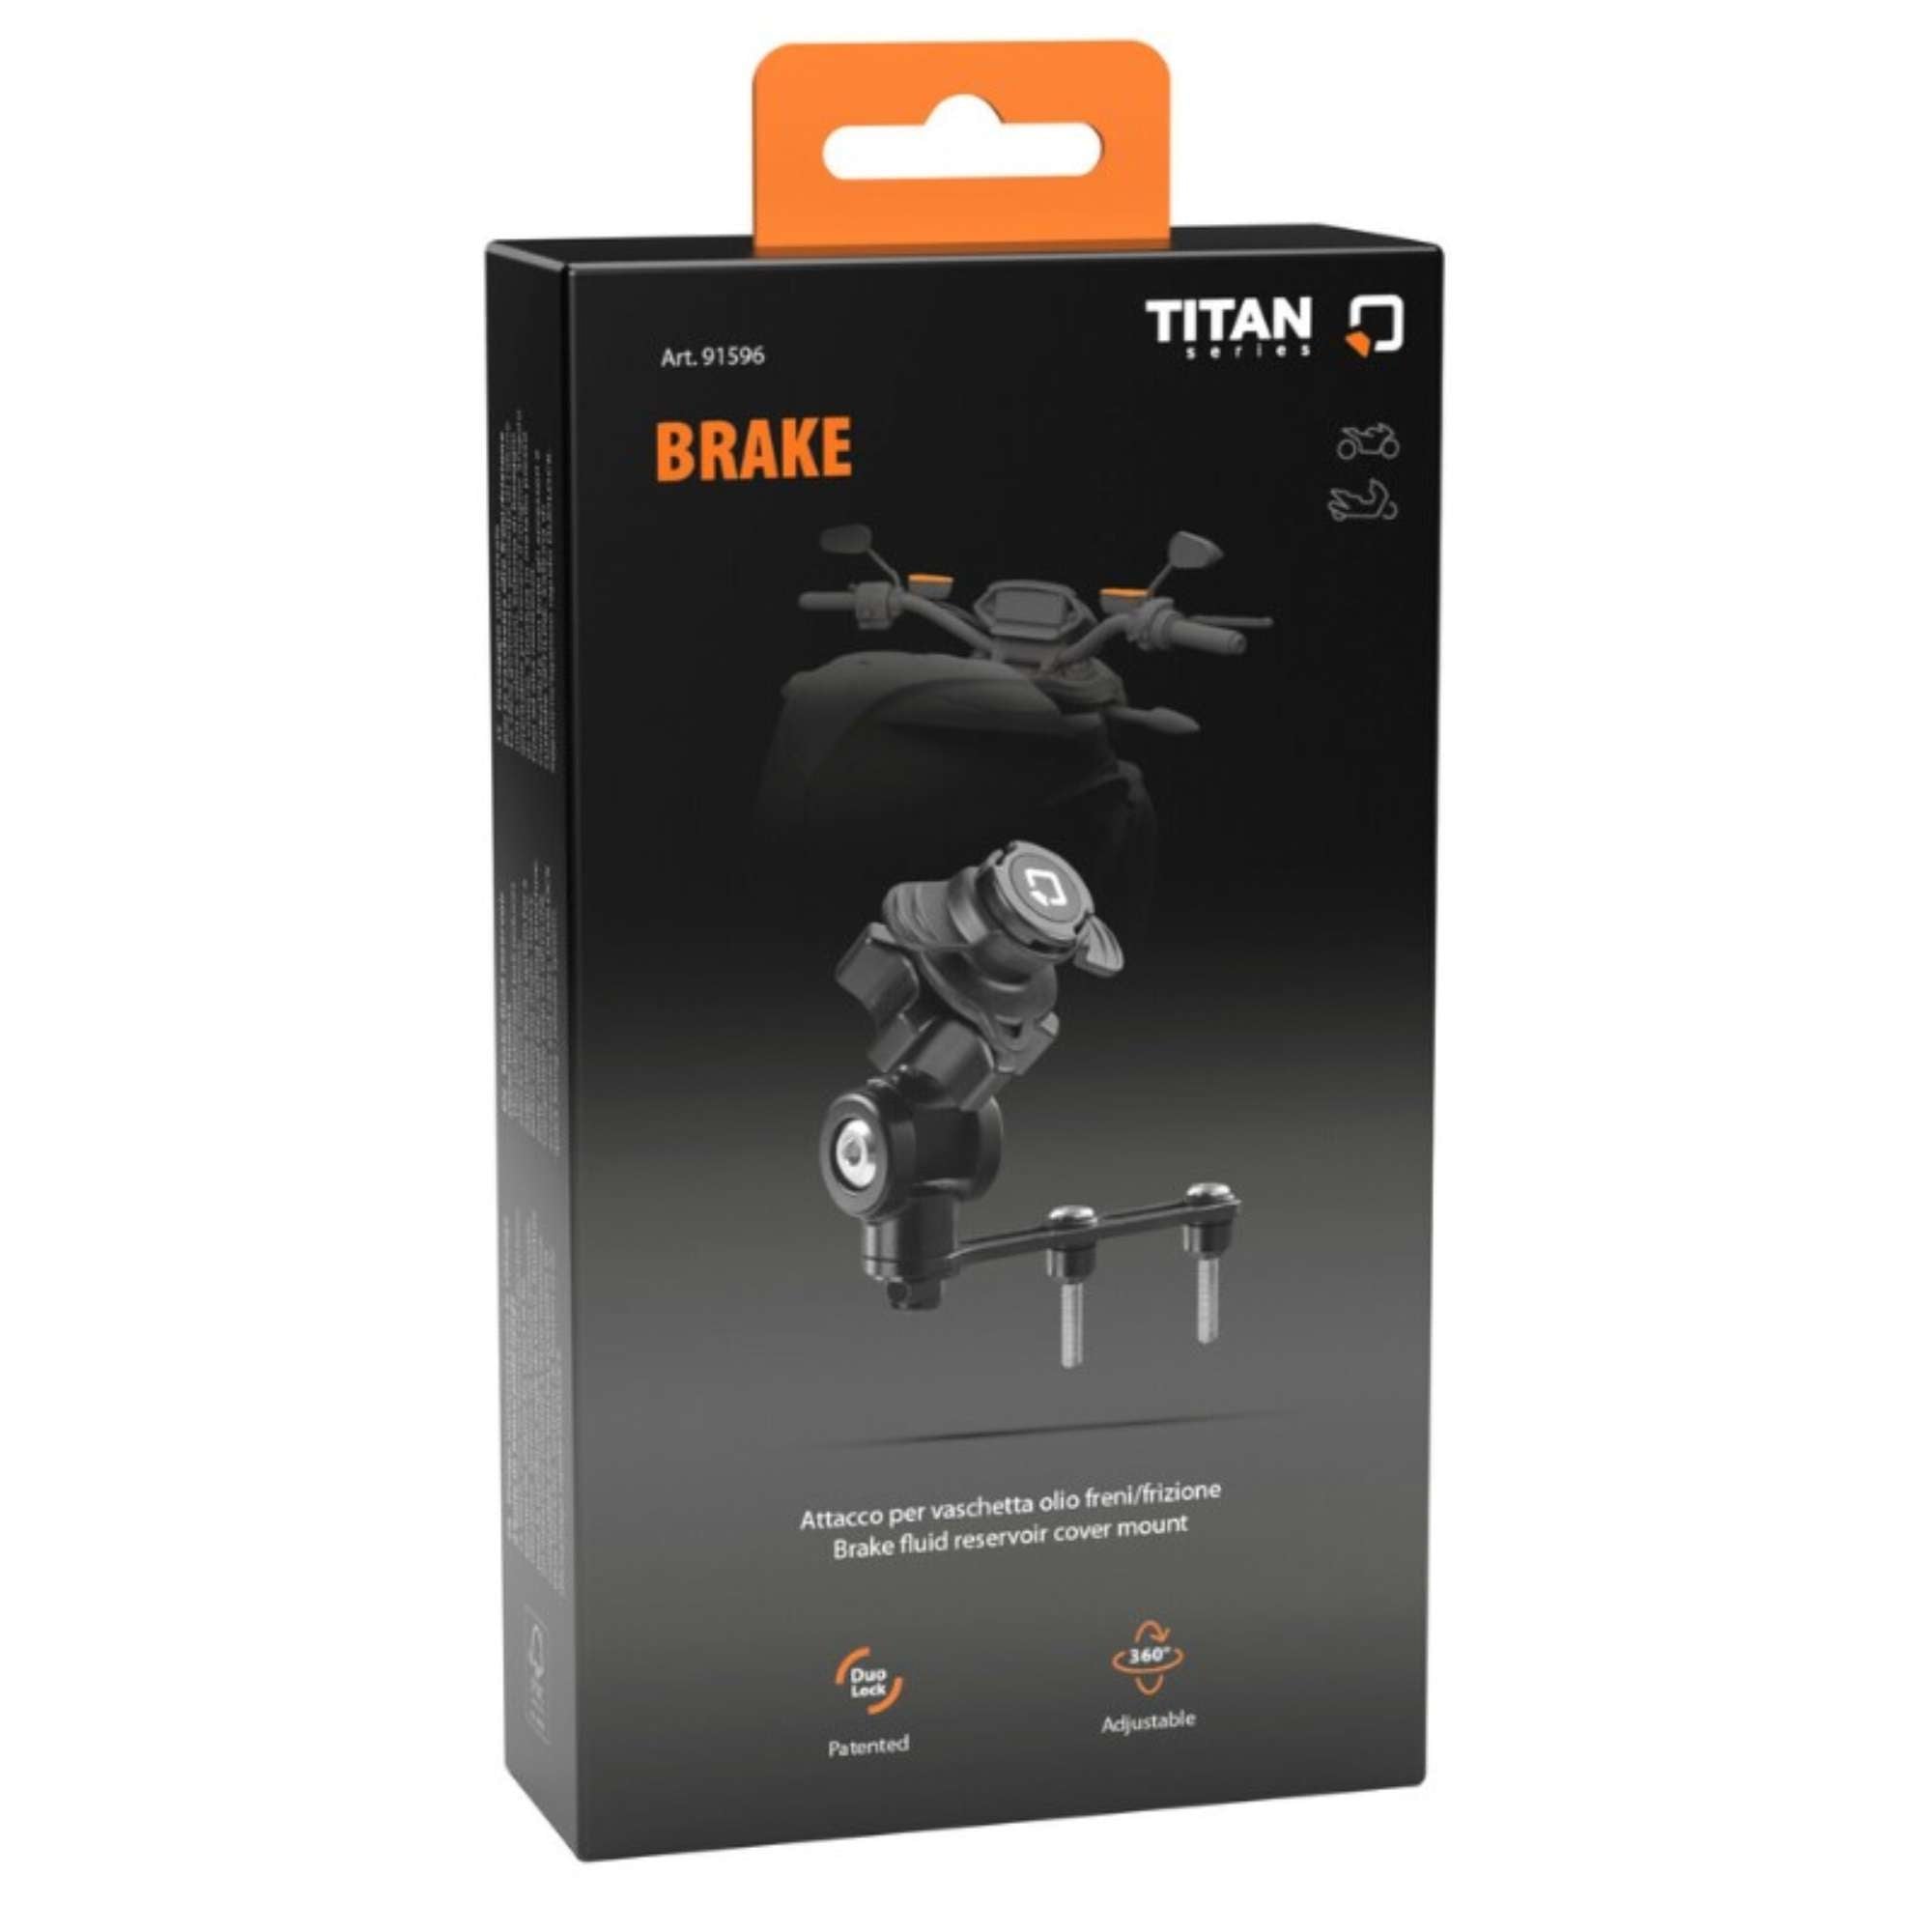 Titan Brake, supporto con attacco per vaschetta olio freni/frizione per moto - Lampa